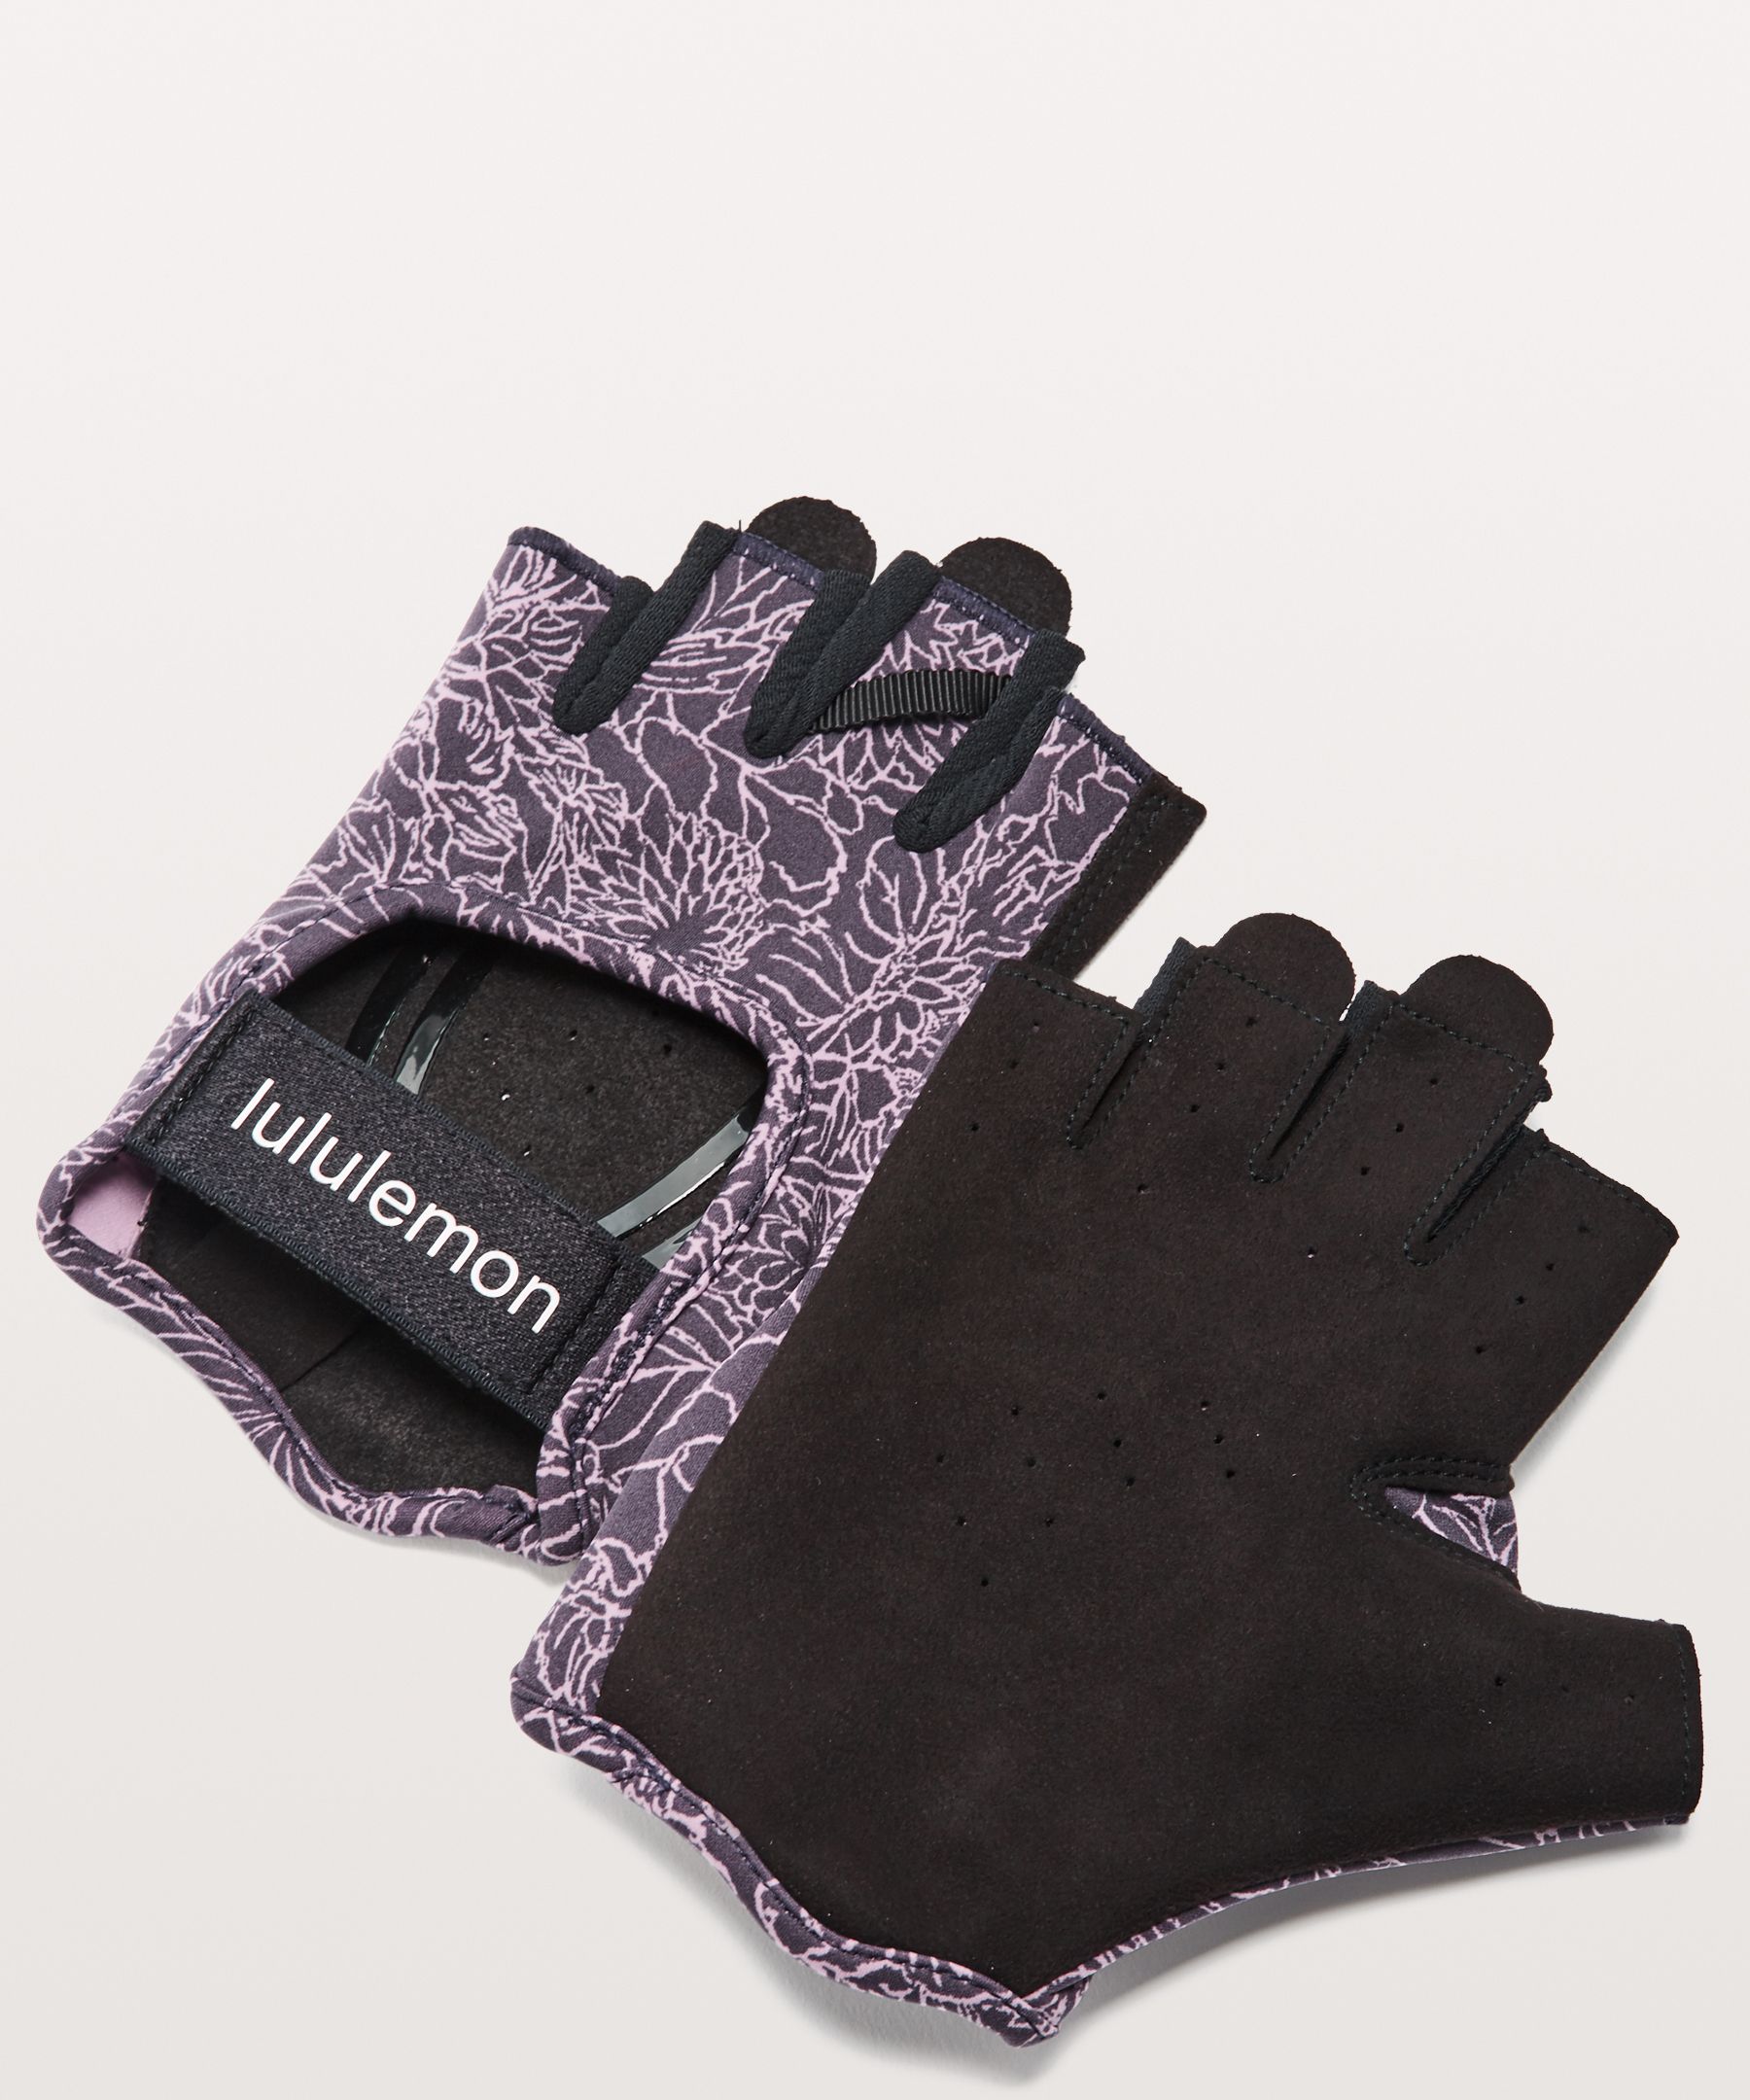 Lululemon Uplift Training Gloves In Arabesque Antoinette Smoky Quartz/black